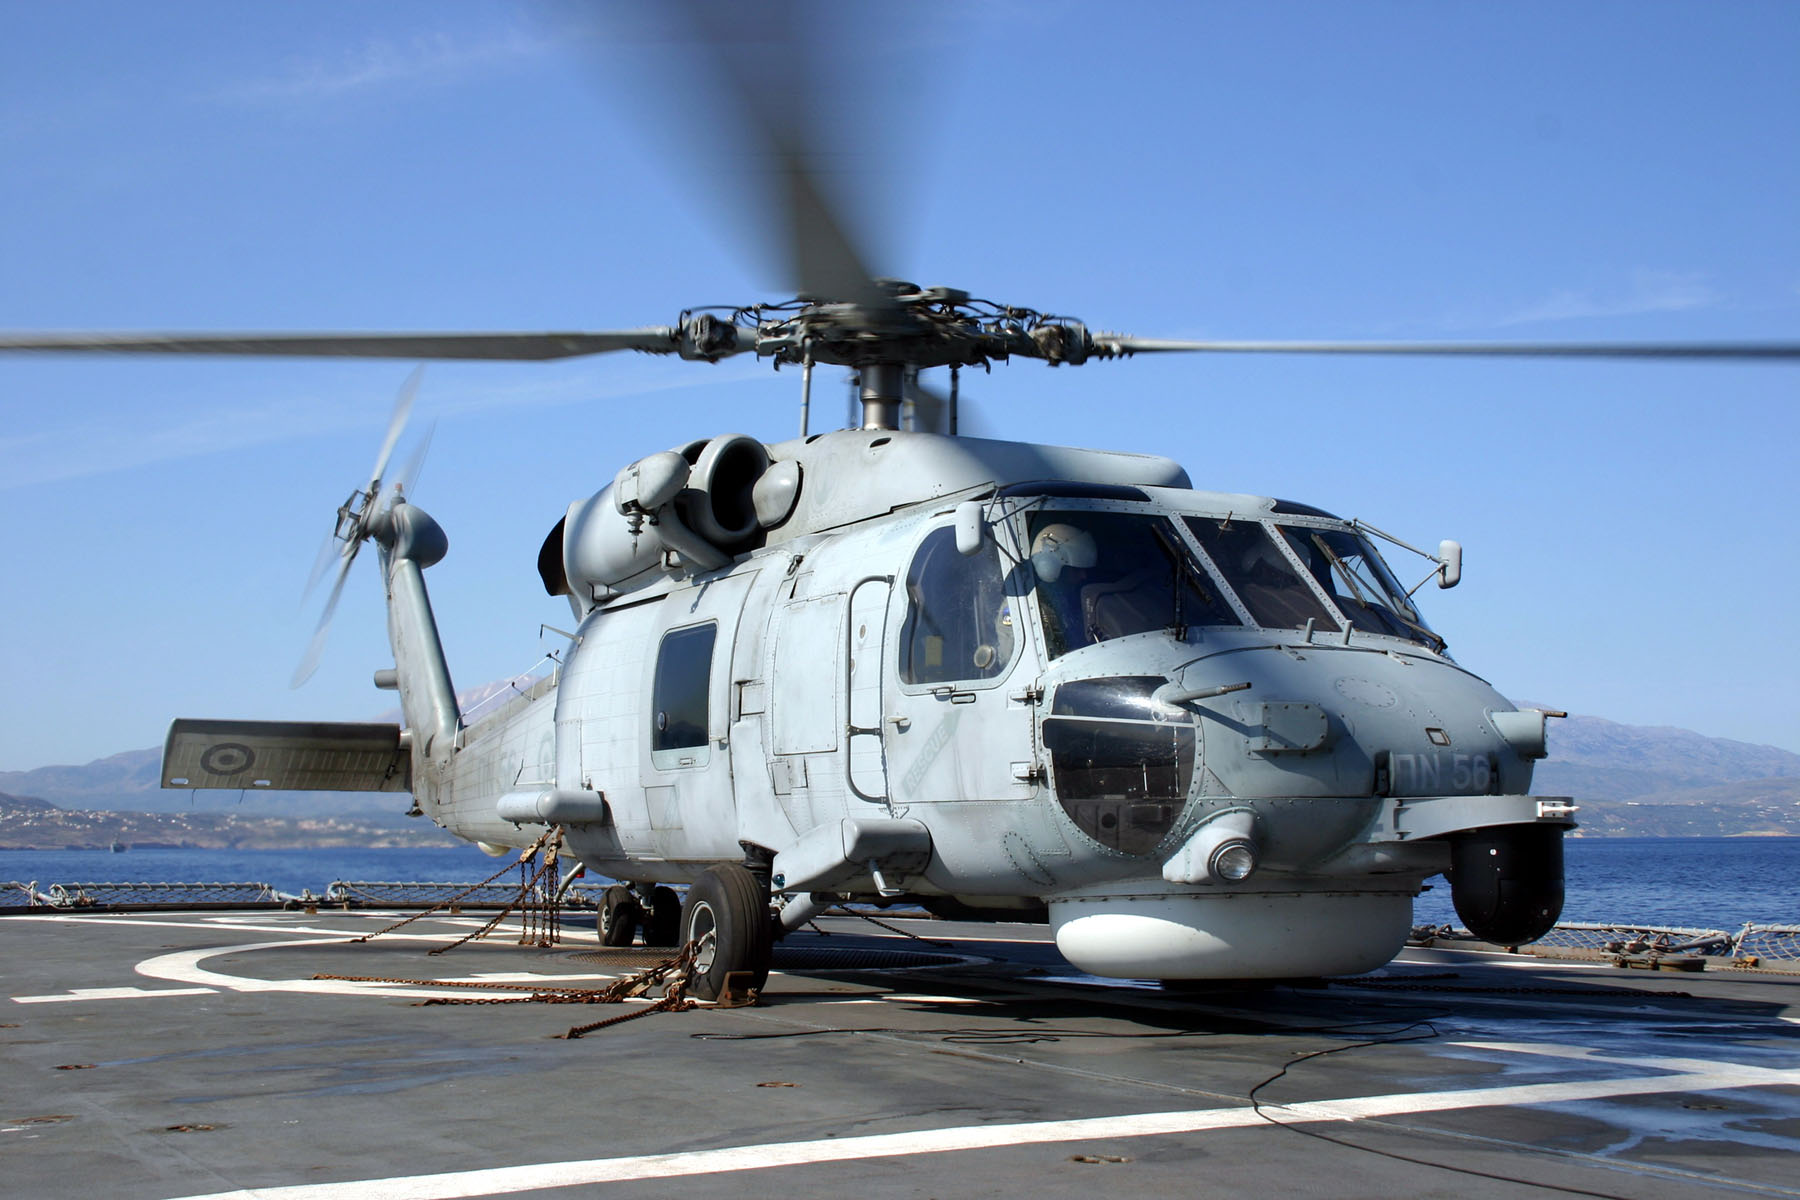 ΓΕΝ: Μεταφορά ασθενούς με ελικόπτερο Aegean Hawk ΒΑ των Κυθήρων (βίντεο)